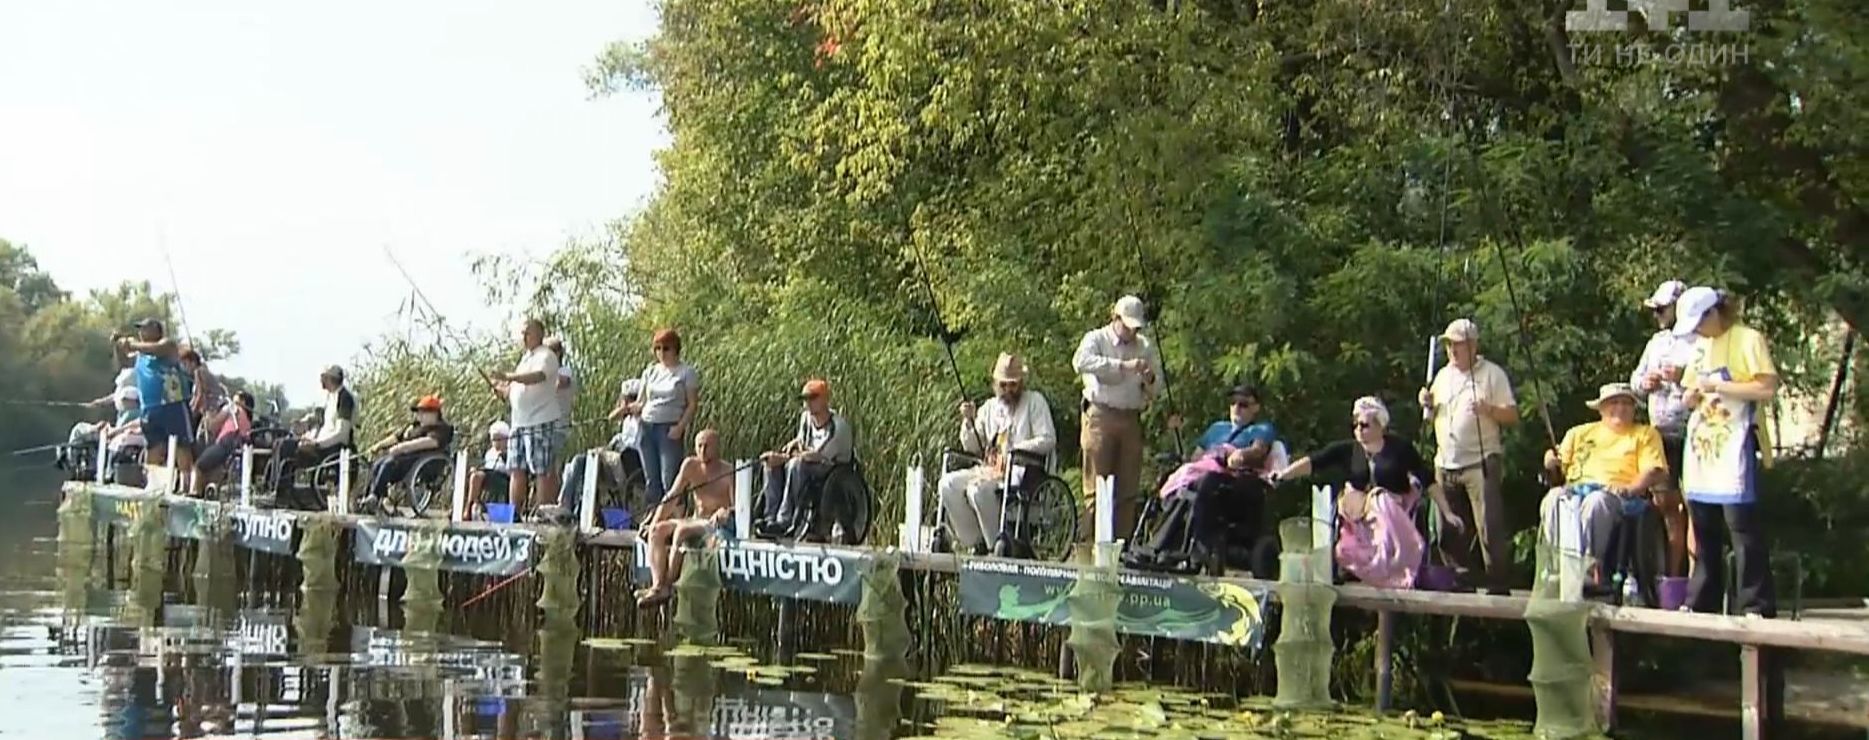 В столице состоялись необычные соревнования по рыболовству среди колясочников